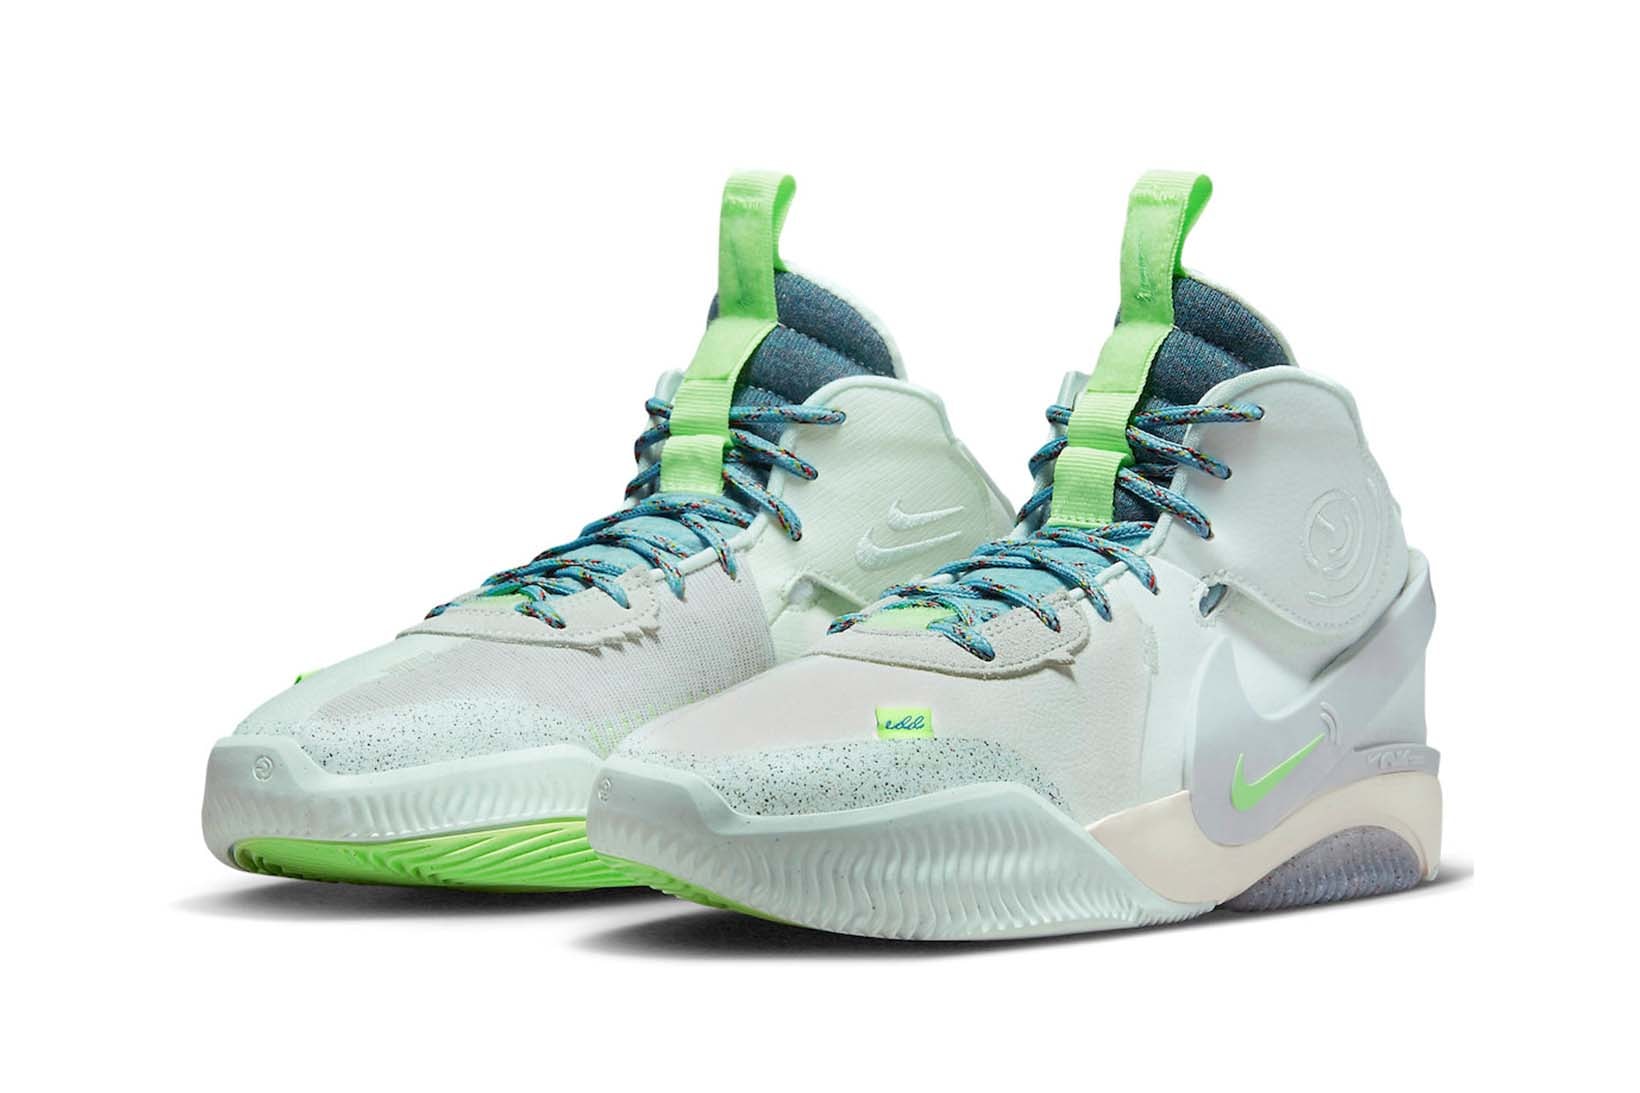 Elena Delle Donne Nike Air Deldon WNBA Washington Mystics Sneakers Price Release Date